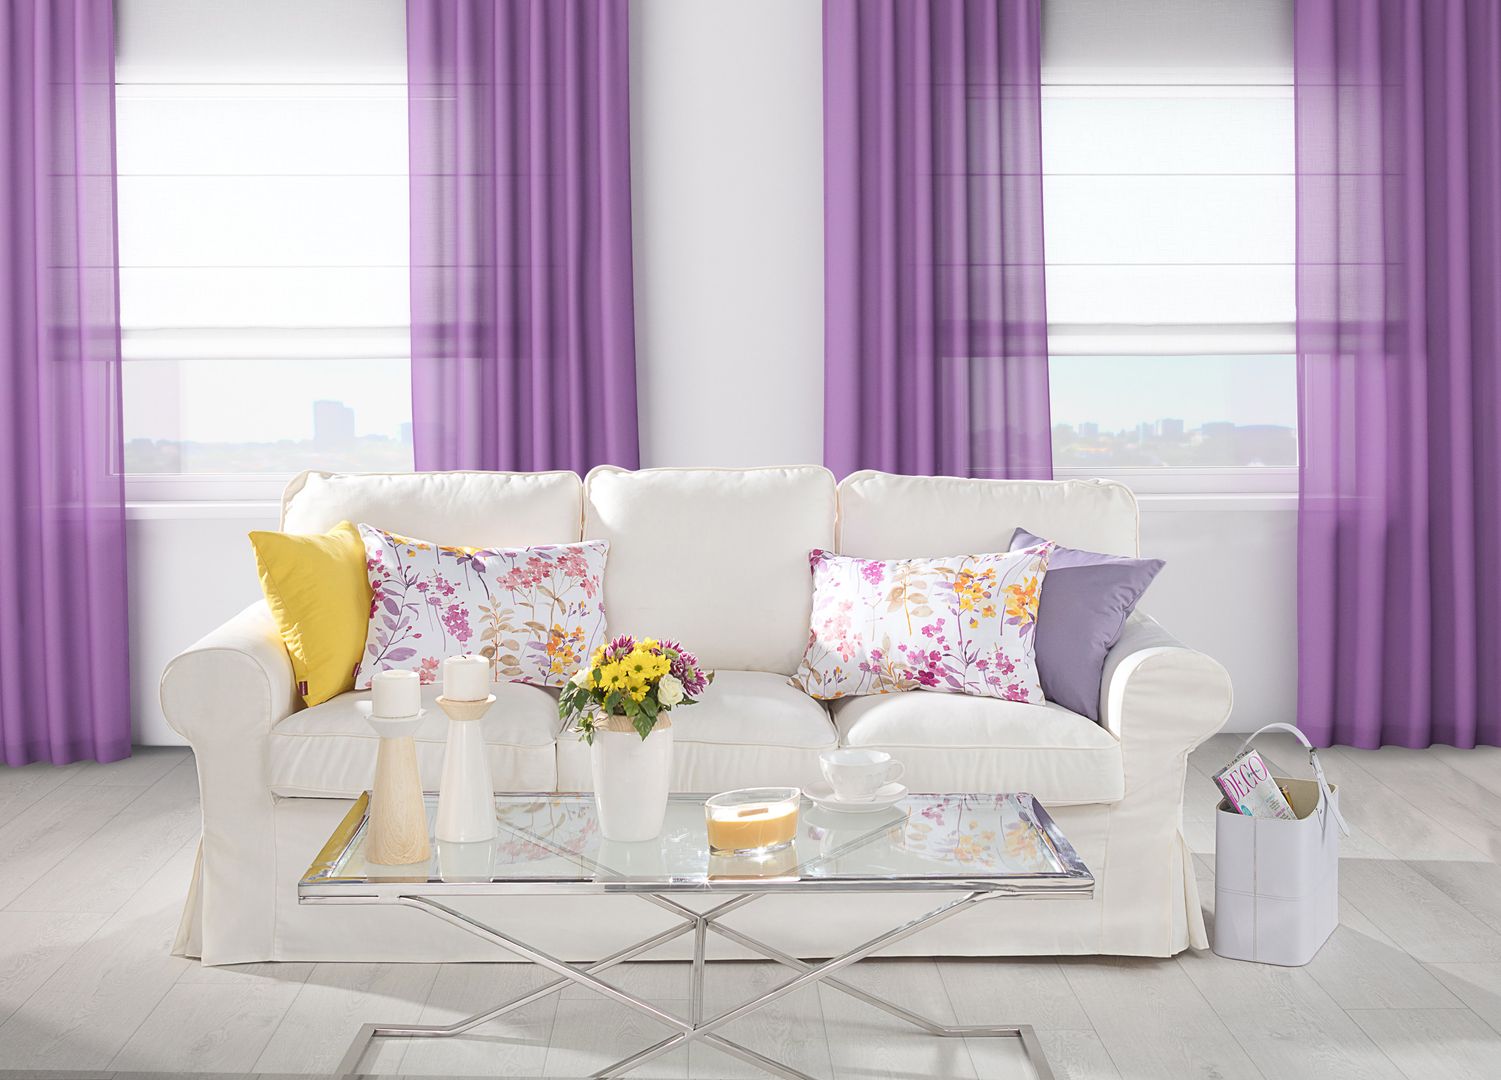 Redesign: Modern Shabby Chic Ultraviolet Living Room Dekoria.co.uk Salas de estilo rústico Textil Ámbar/Dorado Accesorios y decoración